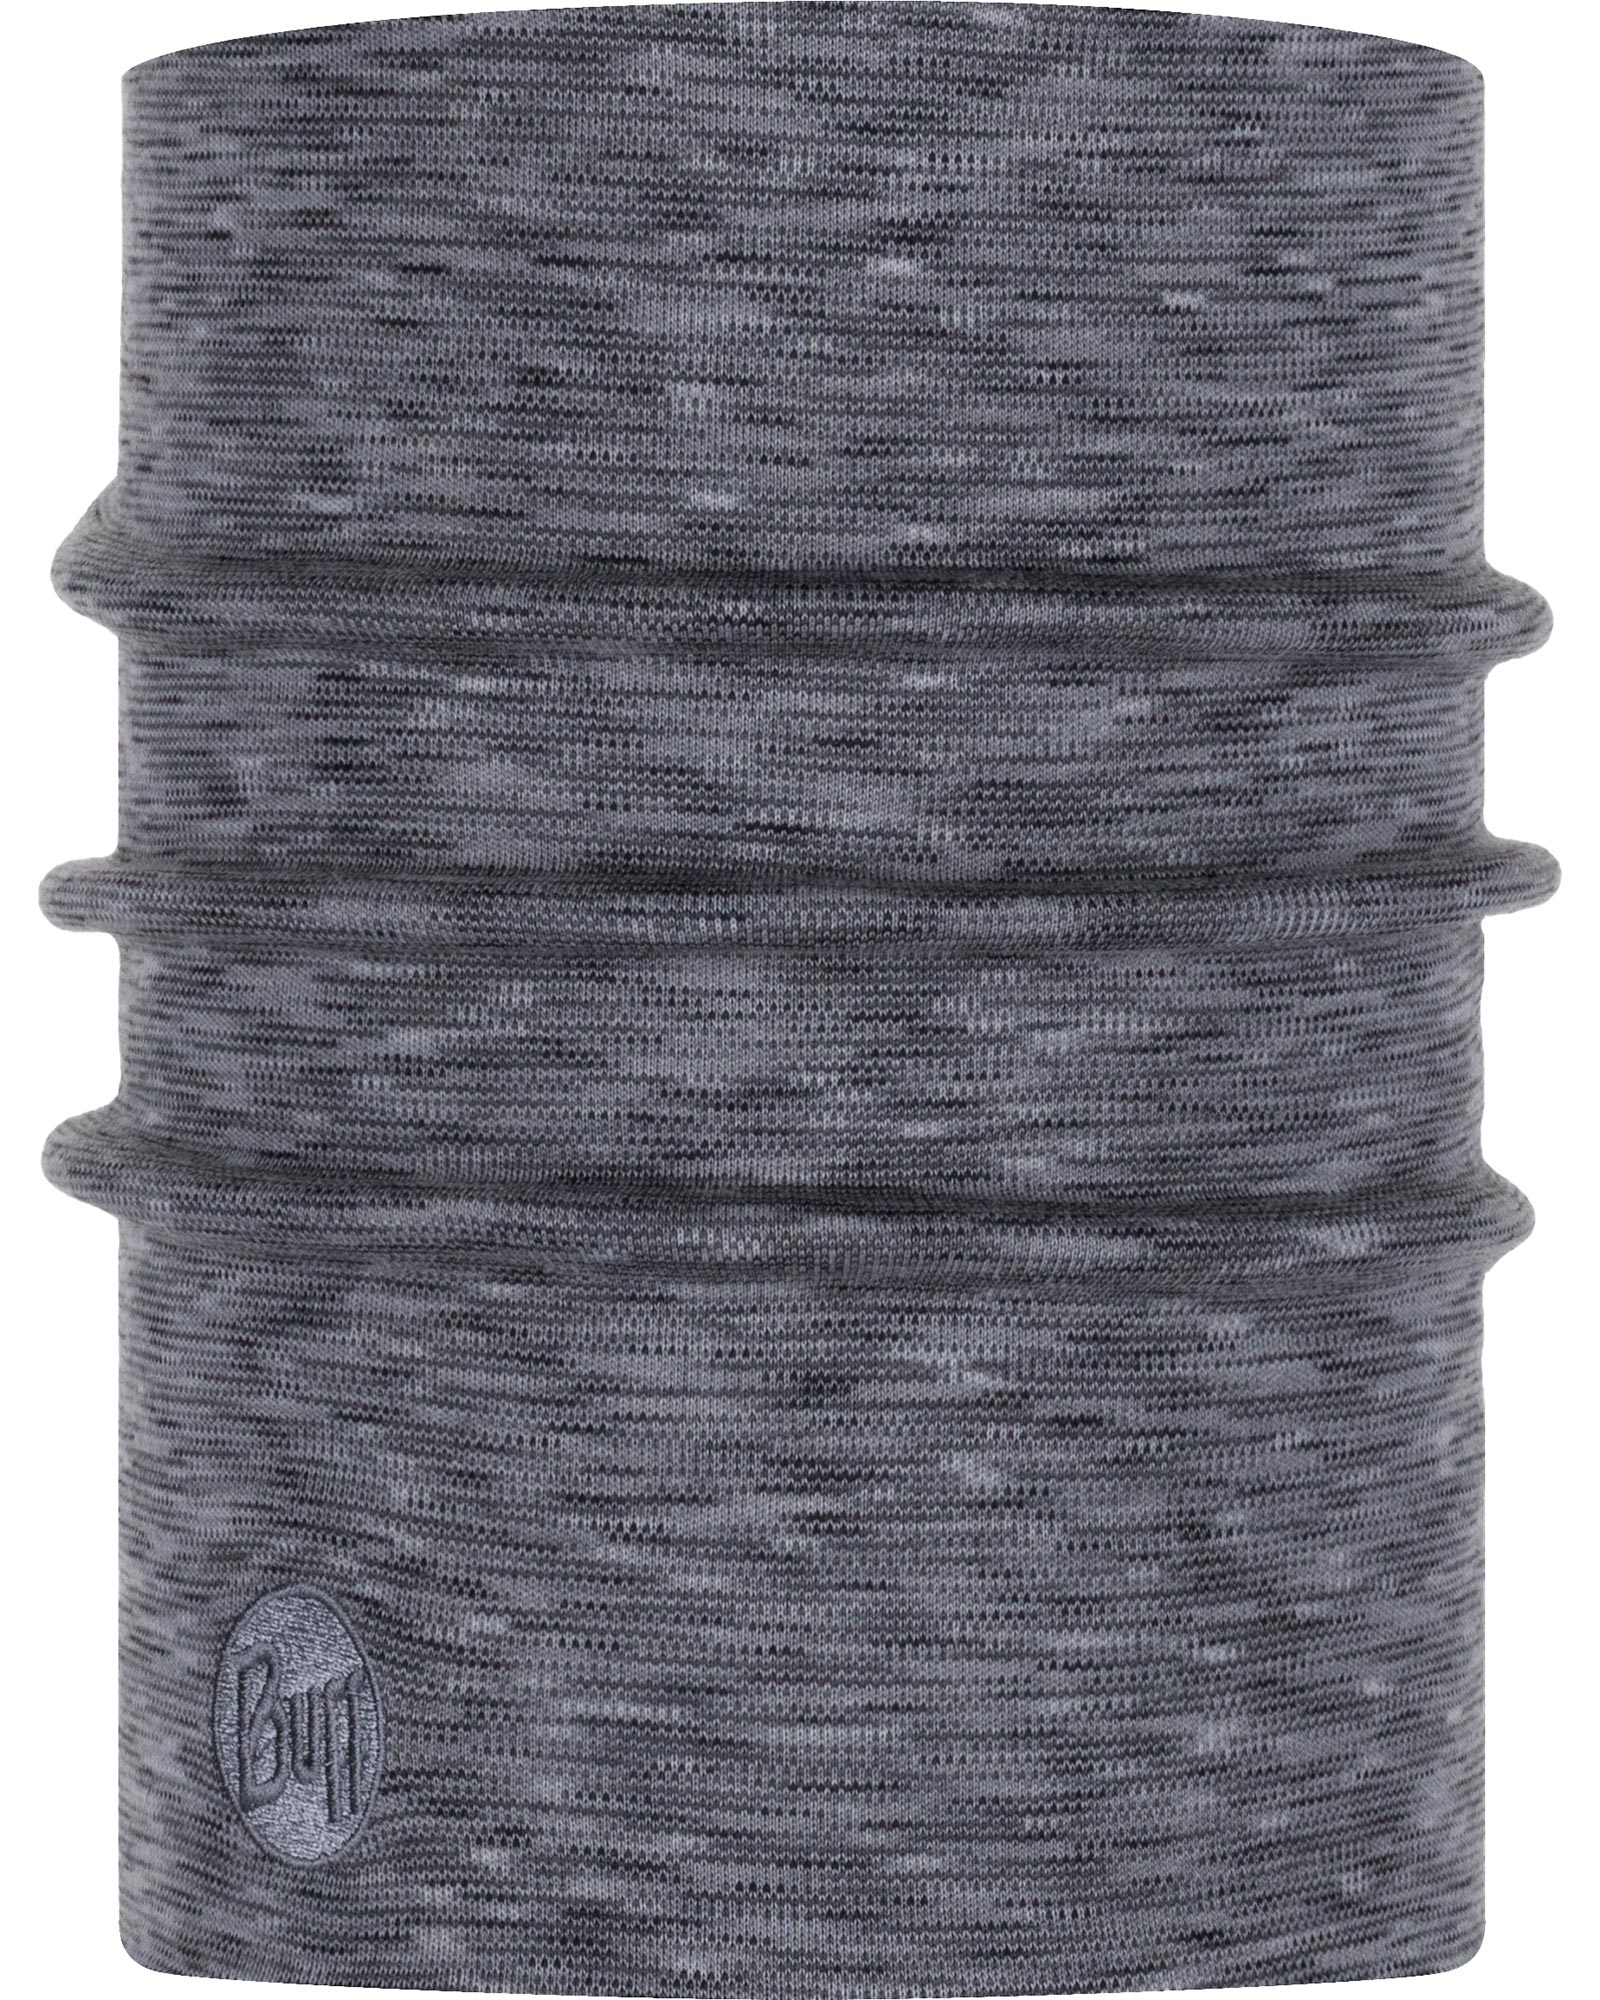 Buff Merino Heavyweight Neck Warmer   Fog Grey Multi Stripes - Fog Grey Multi Stripes